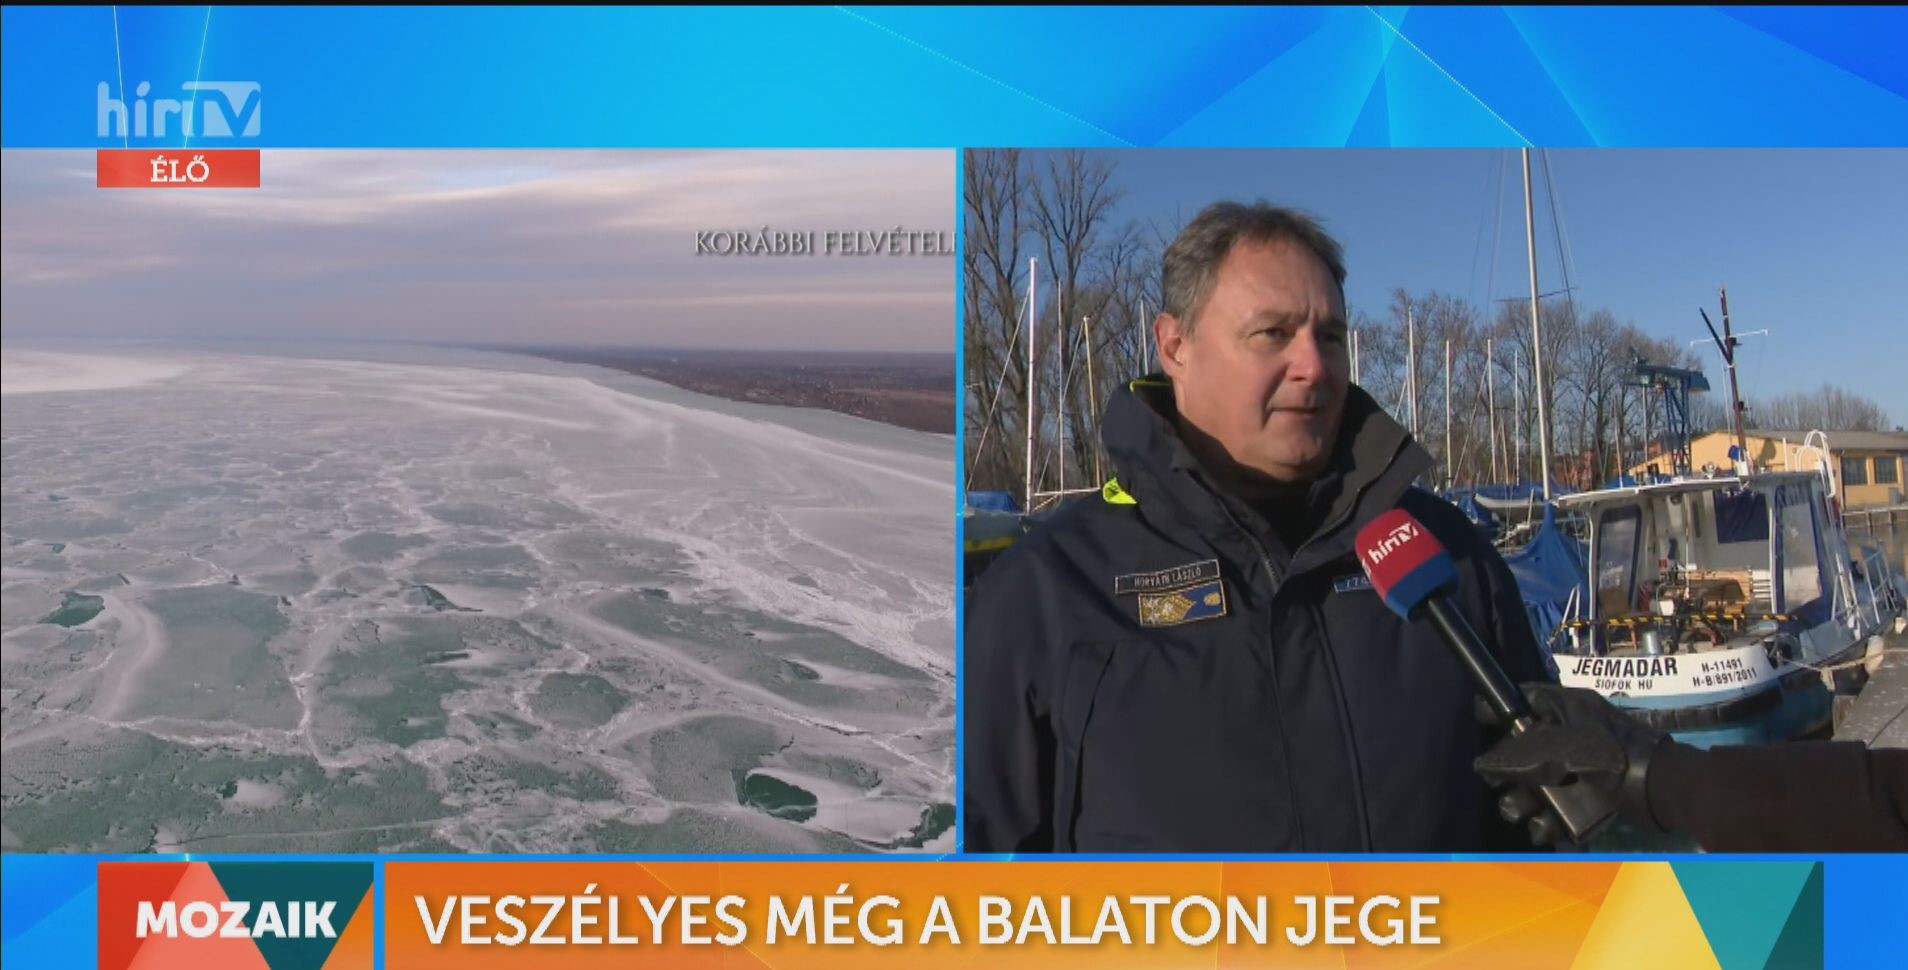 Mozaik - Veszélyes még a Balaton jege